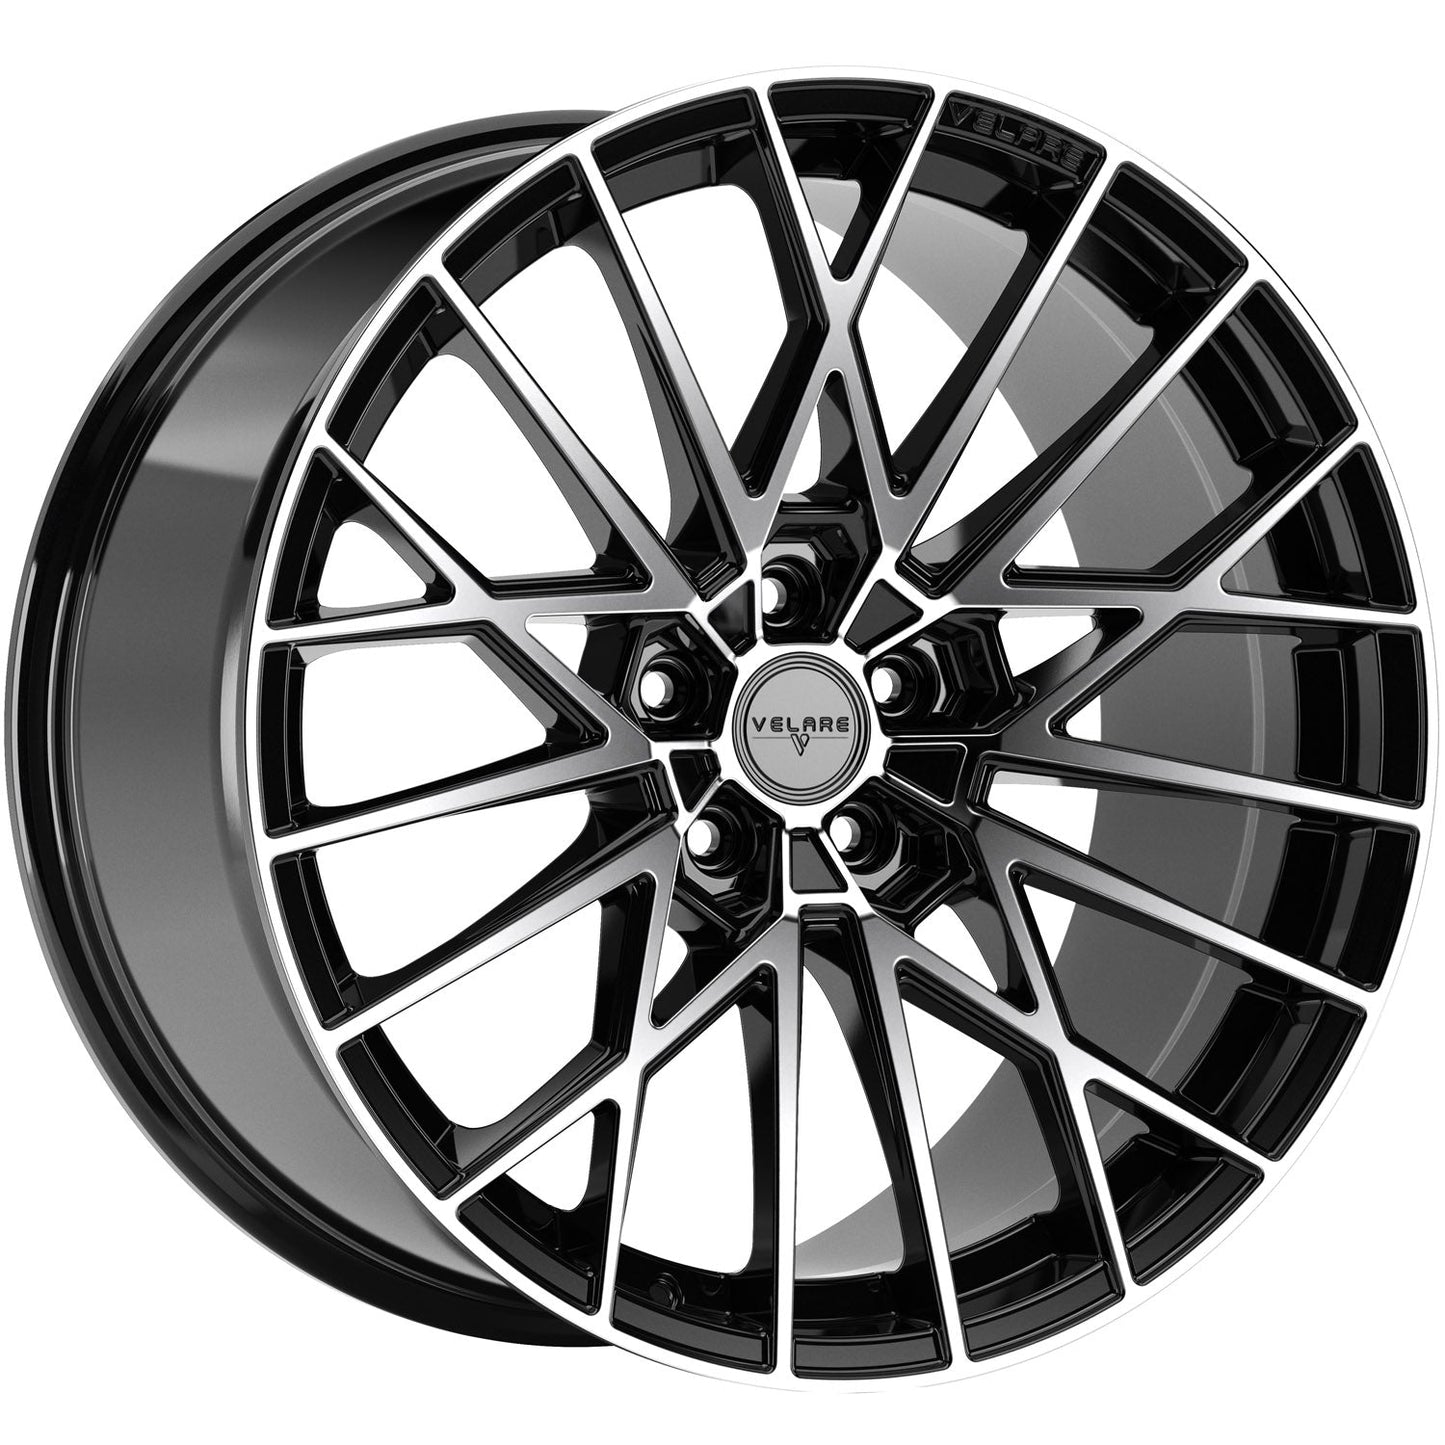 Velare-VLR07-Diamond-Black-Machined-Face-Black-20x8.5-66.6-wheels-rims-felger-Felghuset